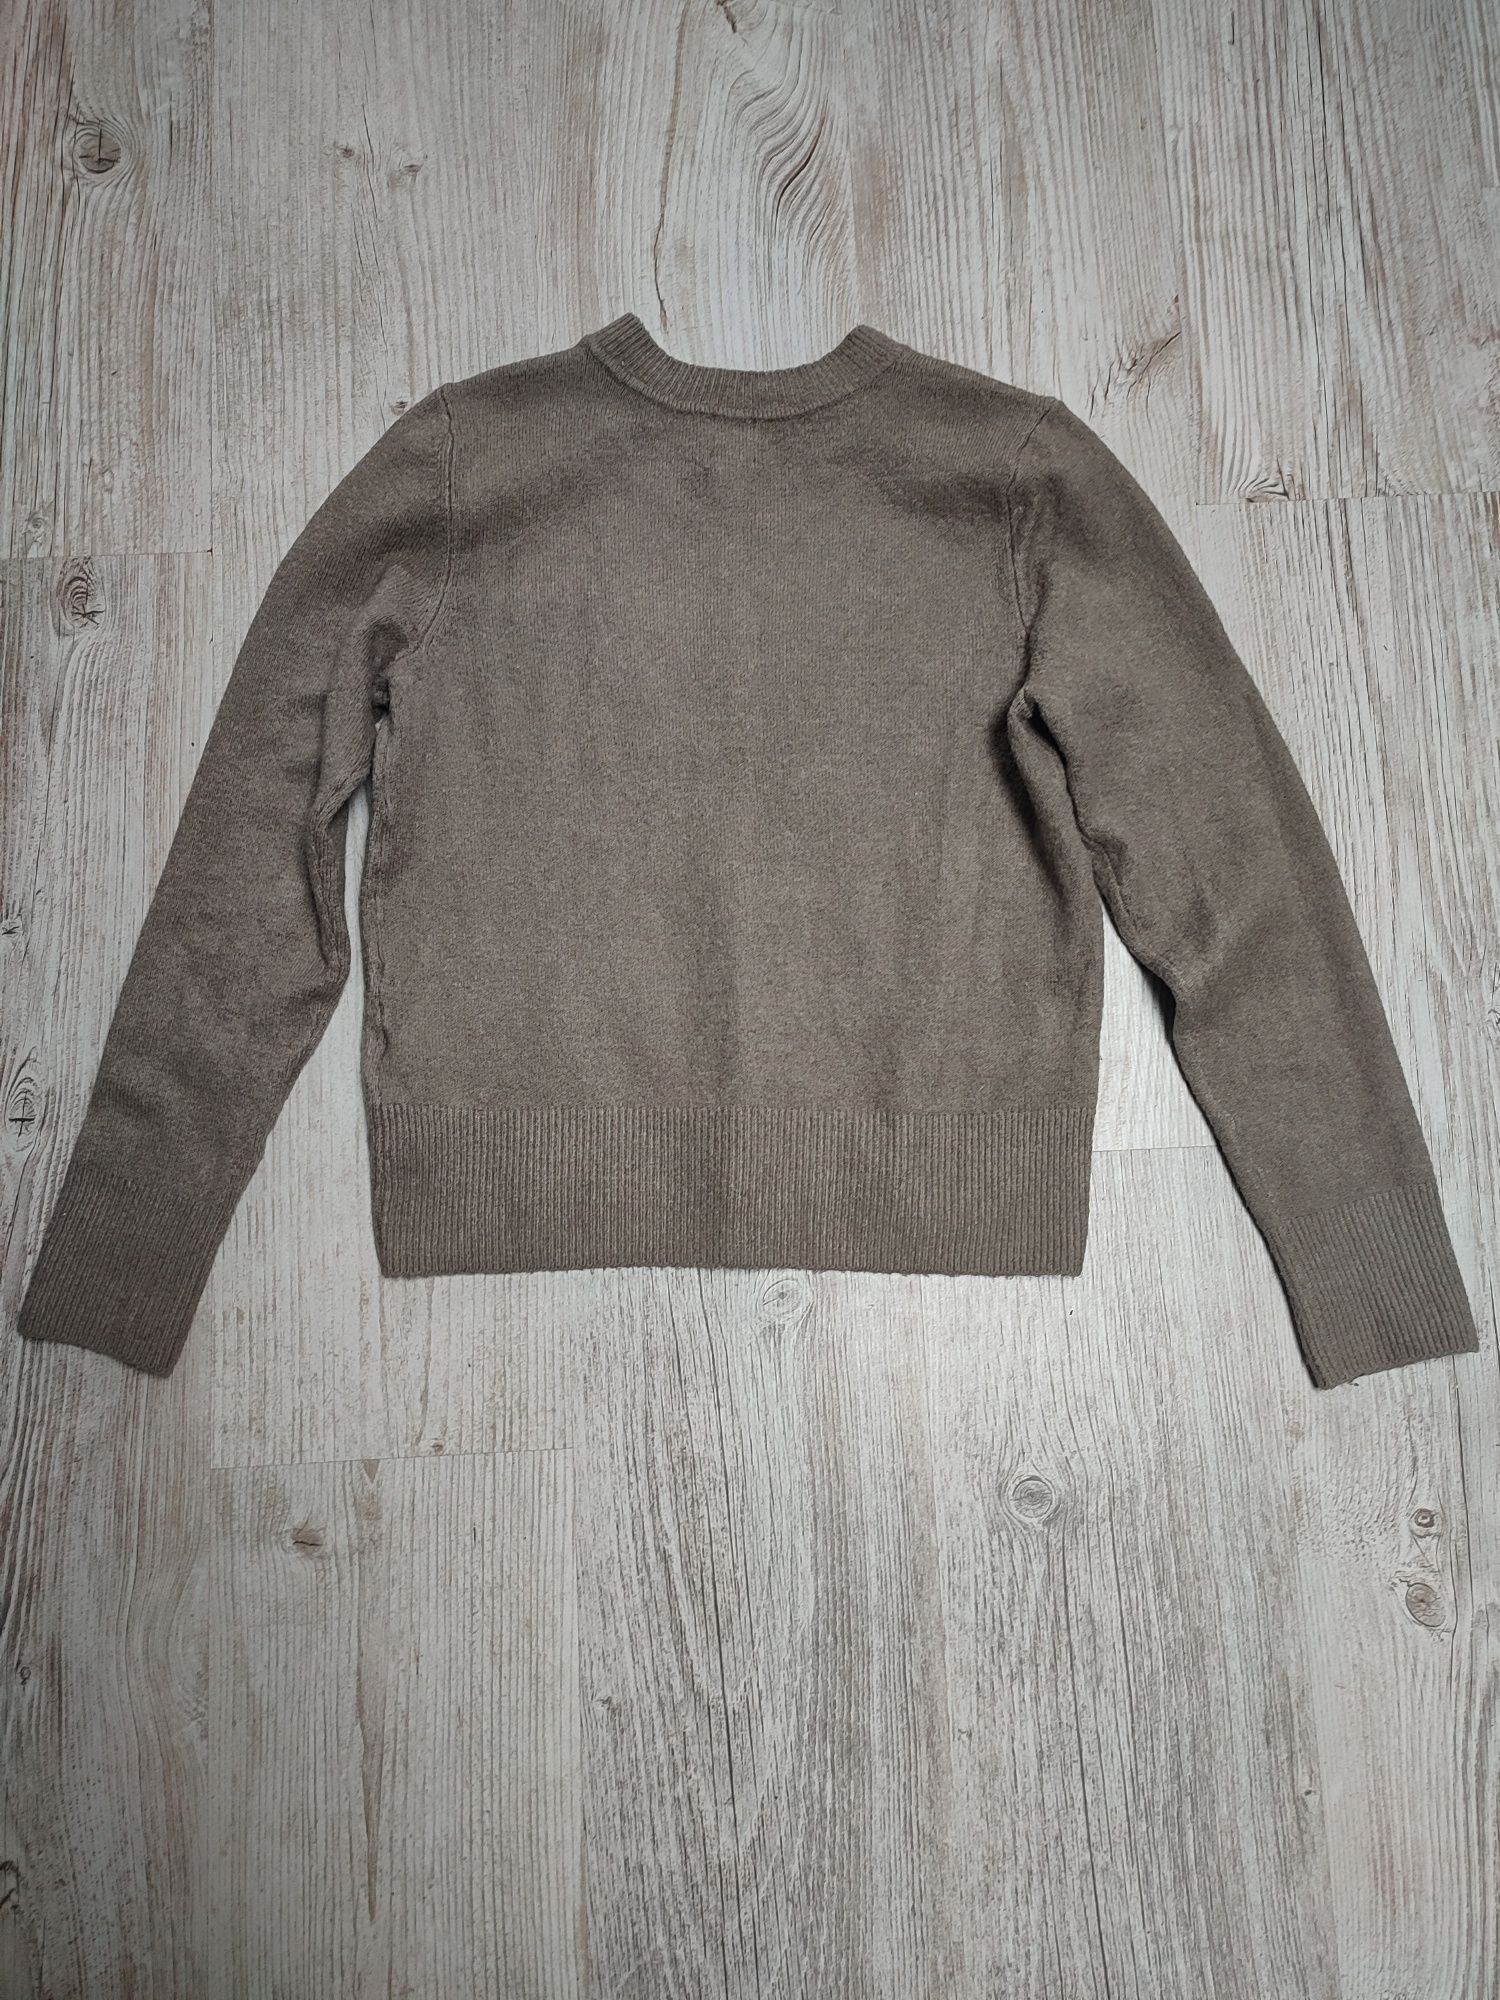 H&M S 36 sweter damski krótki crop top sweterek złoto guziki wełna